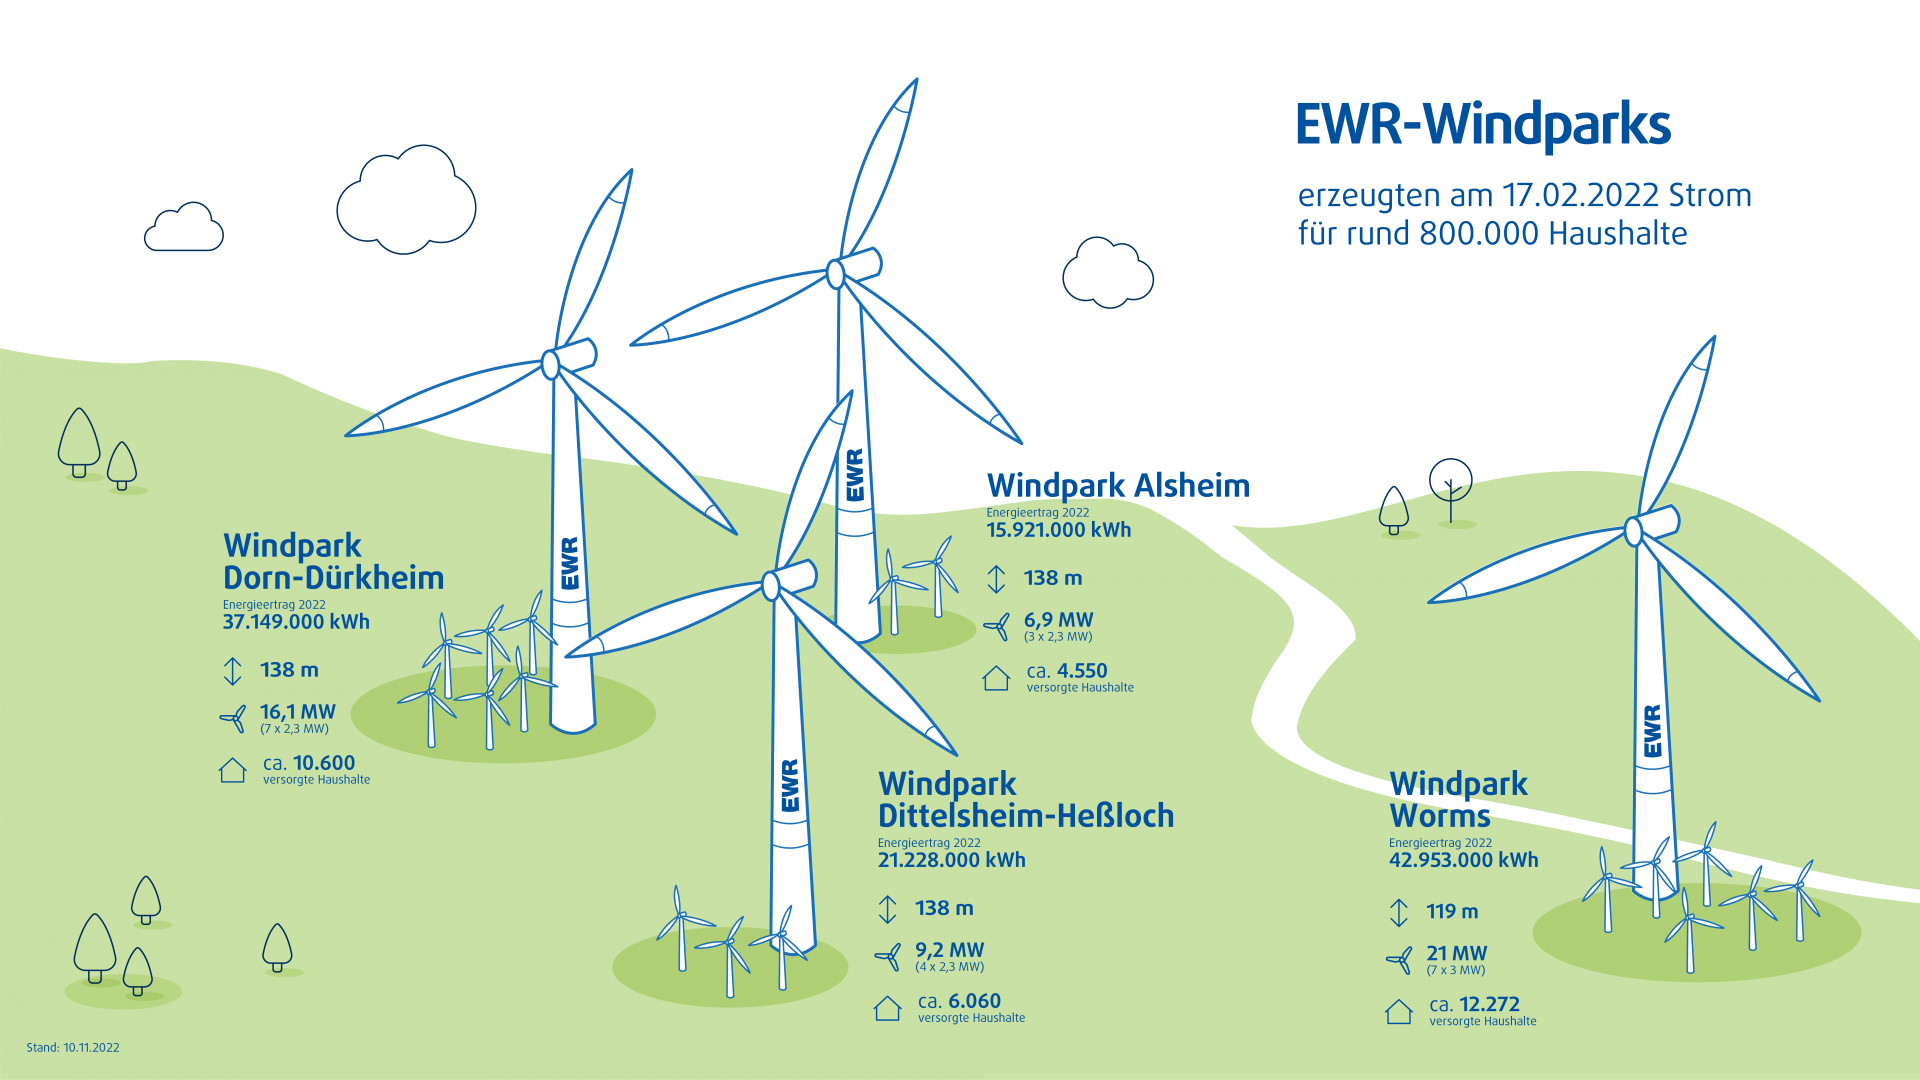 Energiewende in Zahlen: EWR-Windparks erzeugten am windreichsten Tag 2022 Strom für rund 800.000 Haushalte